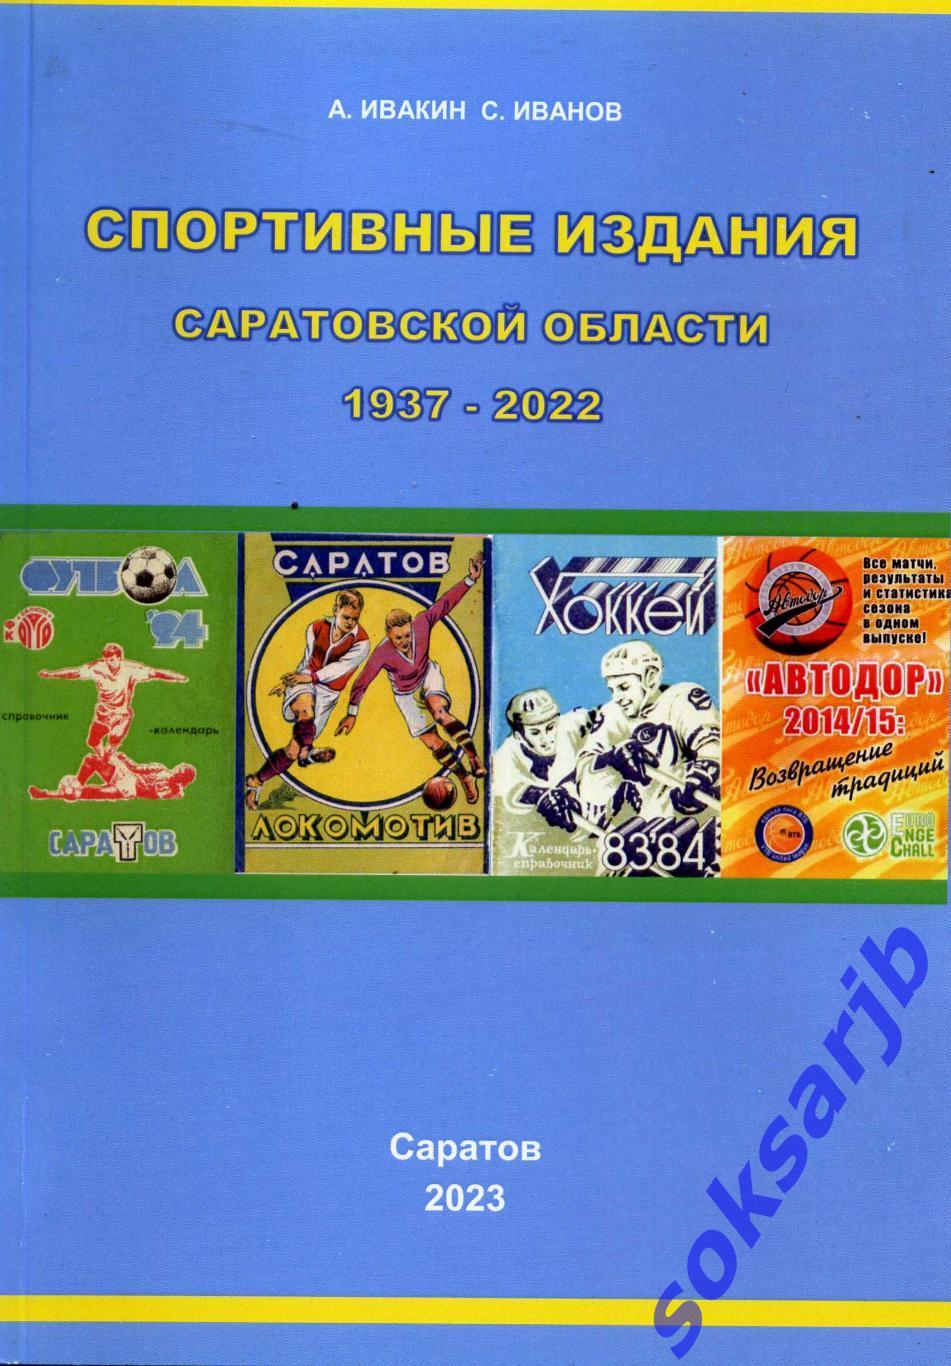 Спортивные издания. Справочник саратов